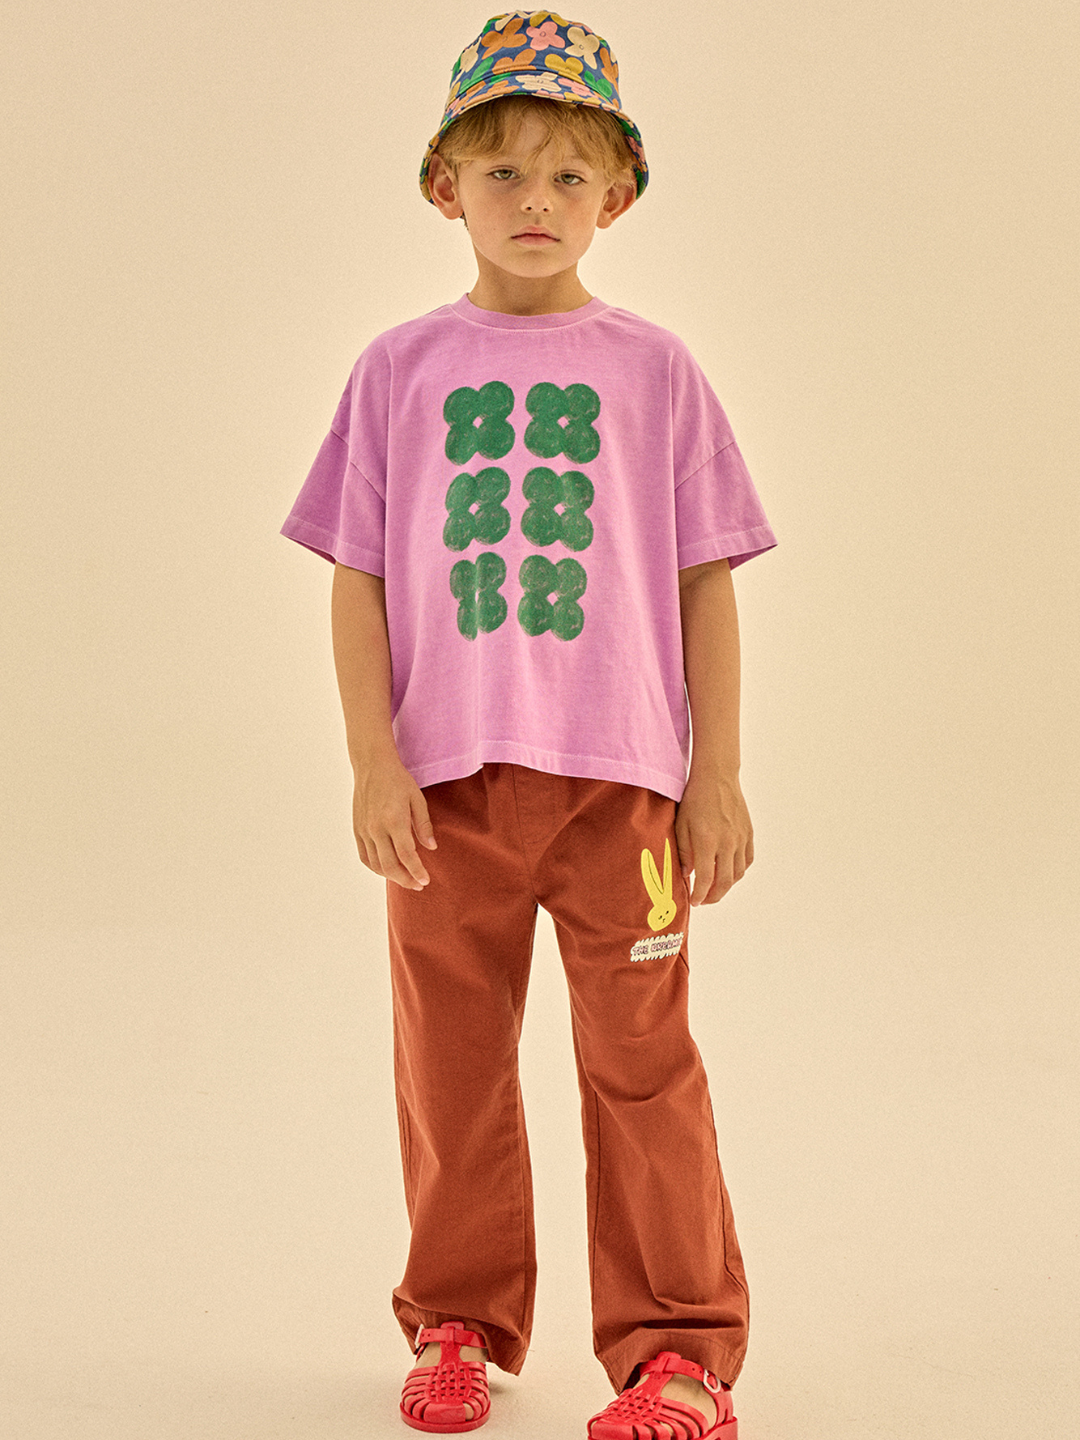 Child wearing Clover Tshirt